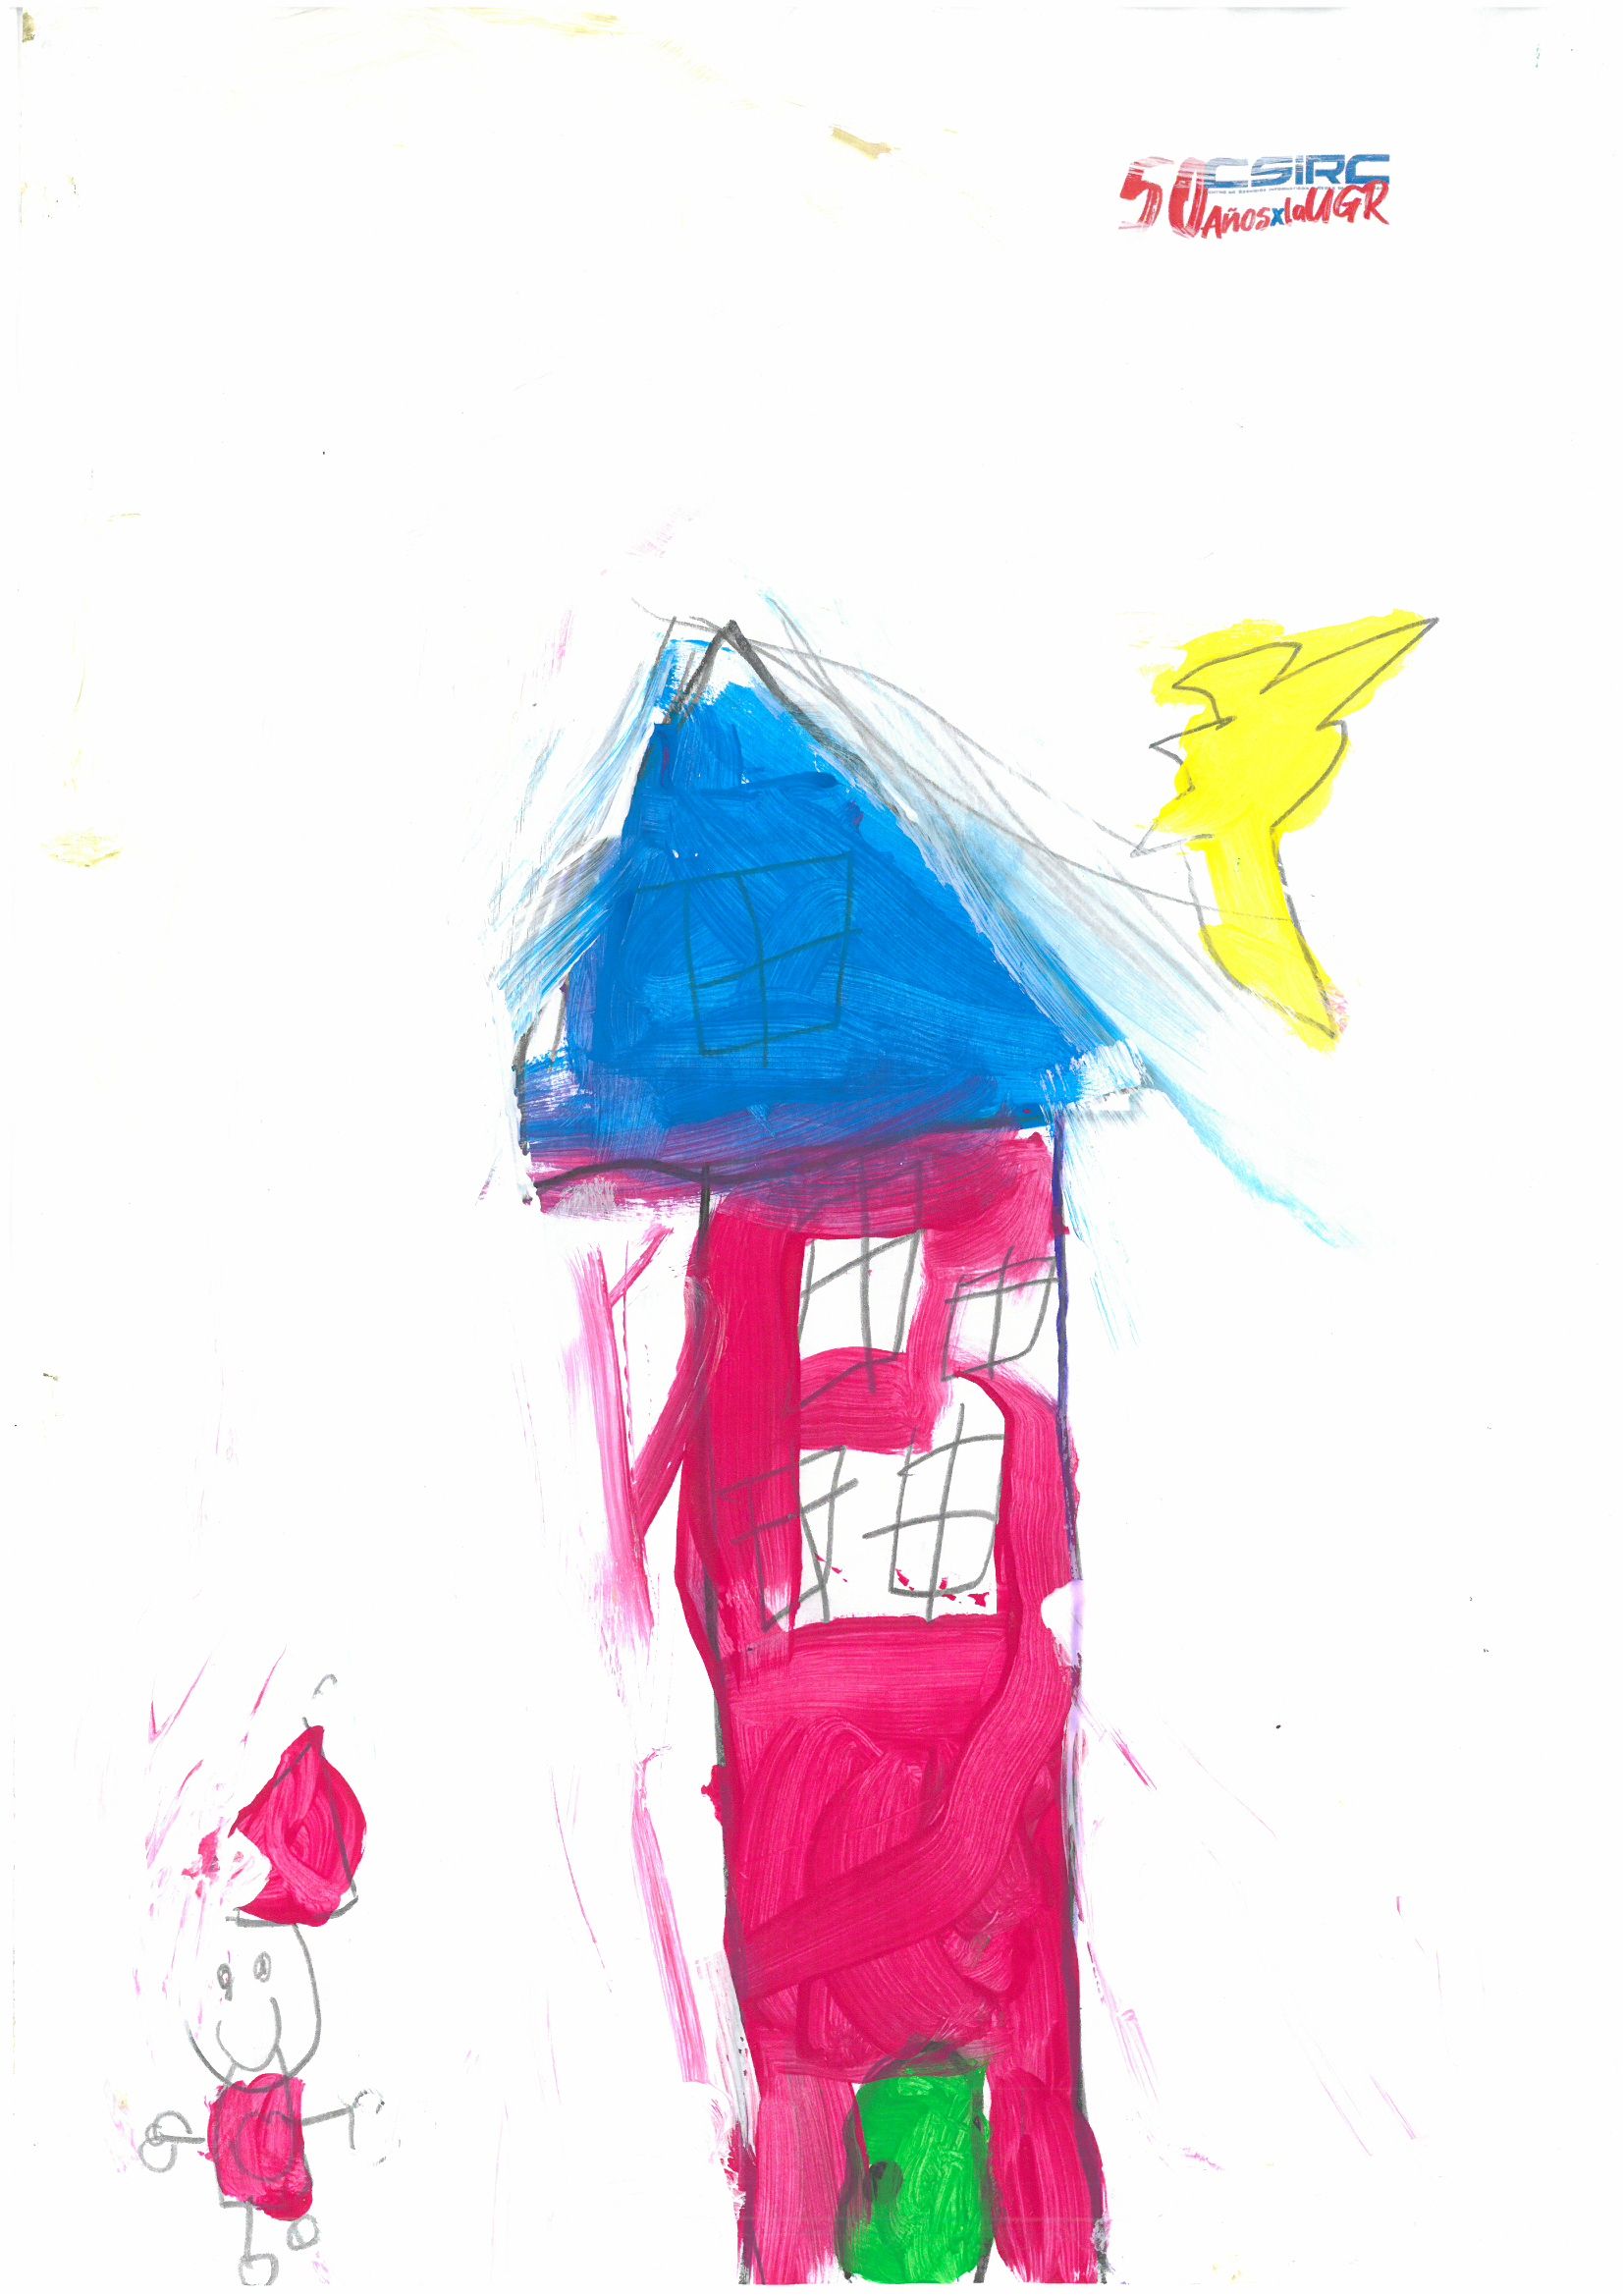 Dibujo infantil con una casa, un sol y una figura